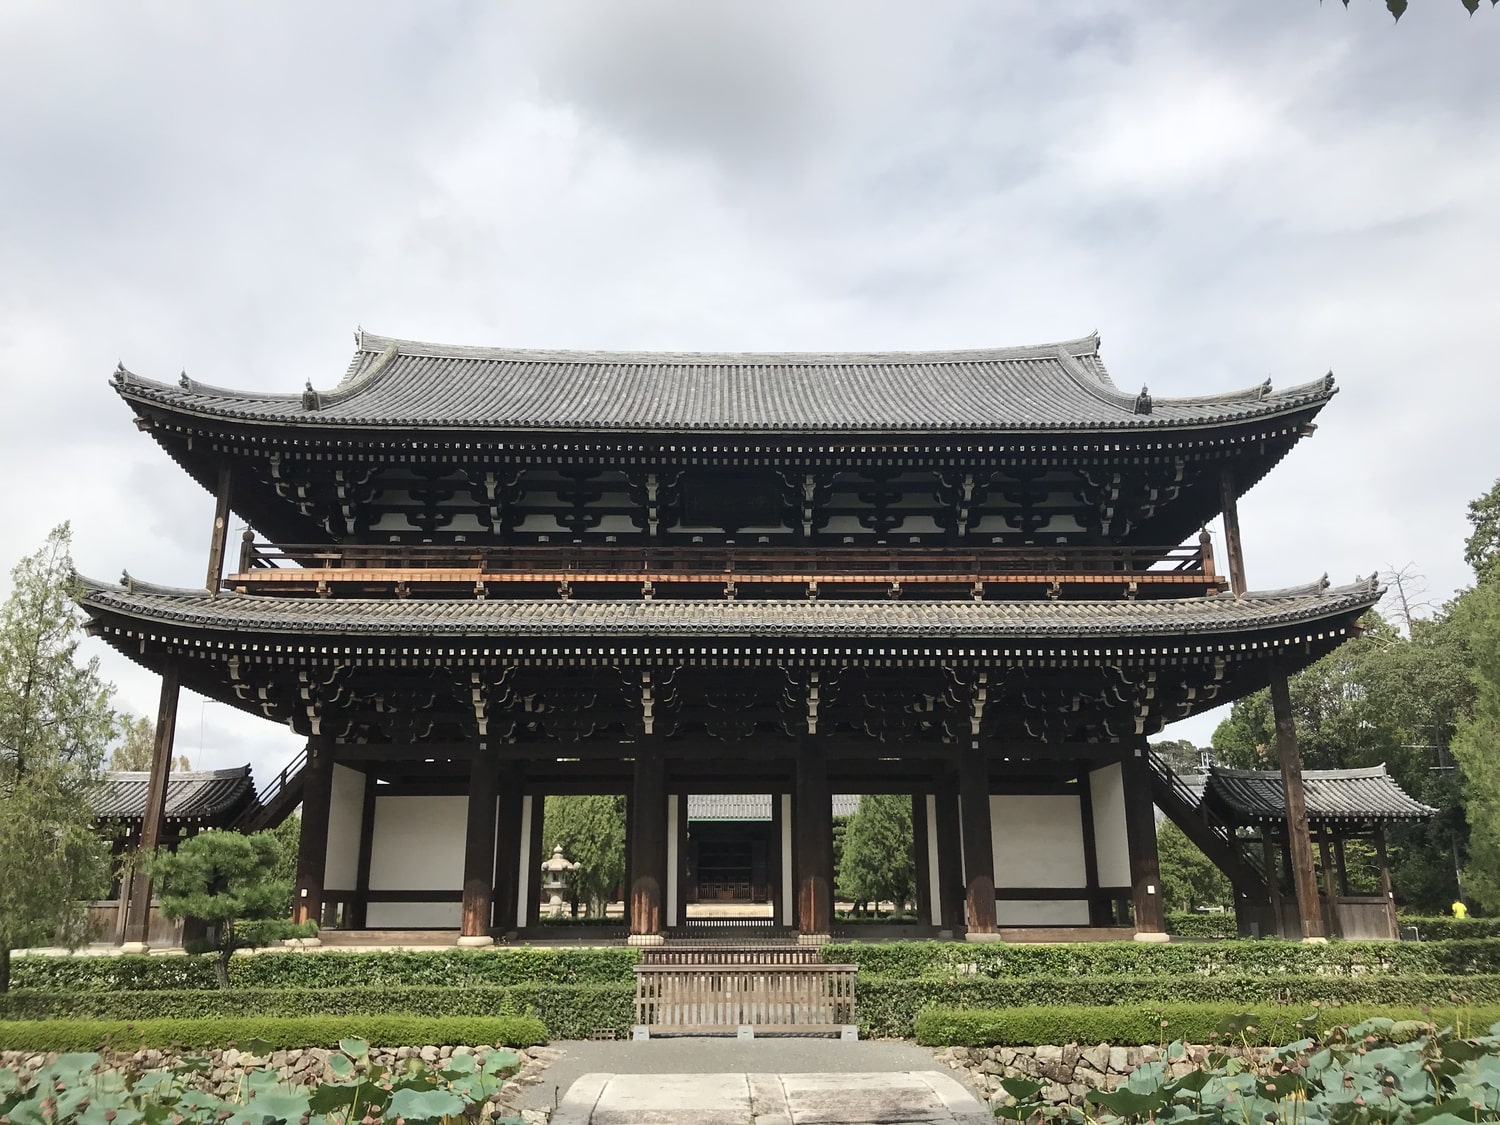 【2020年版】京都紅葉の名所・東福寺の4つの見どころと秋季拝観スケジュール